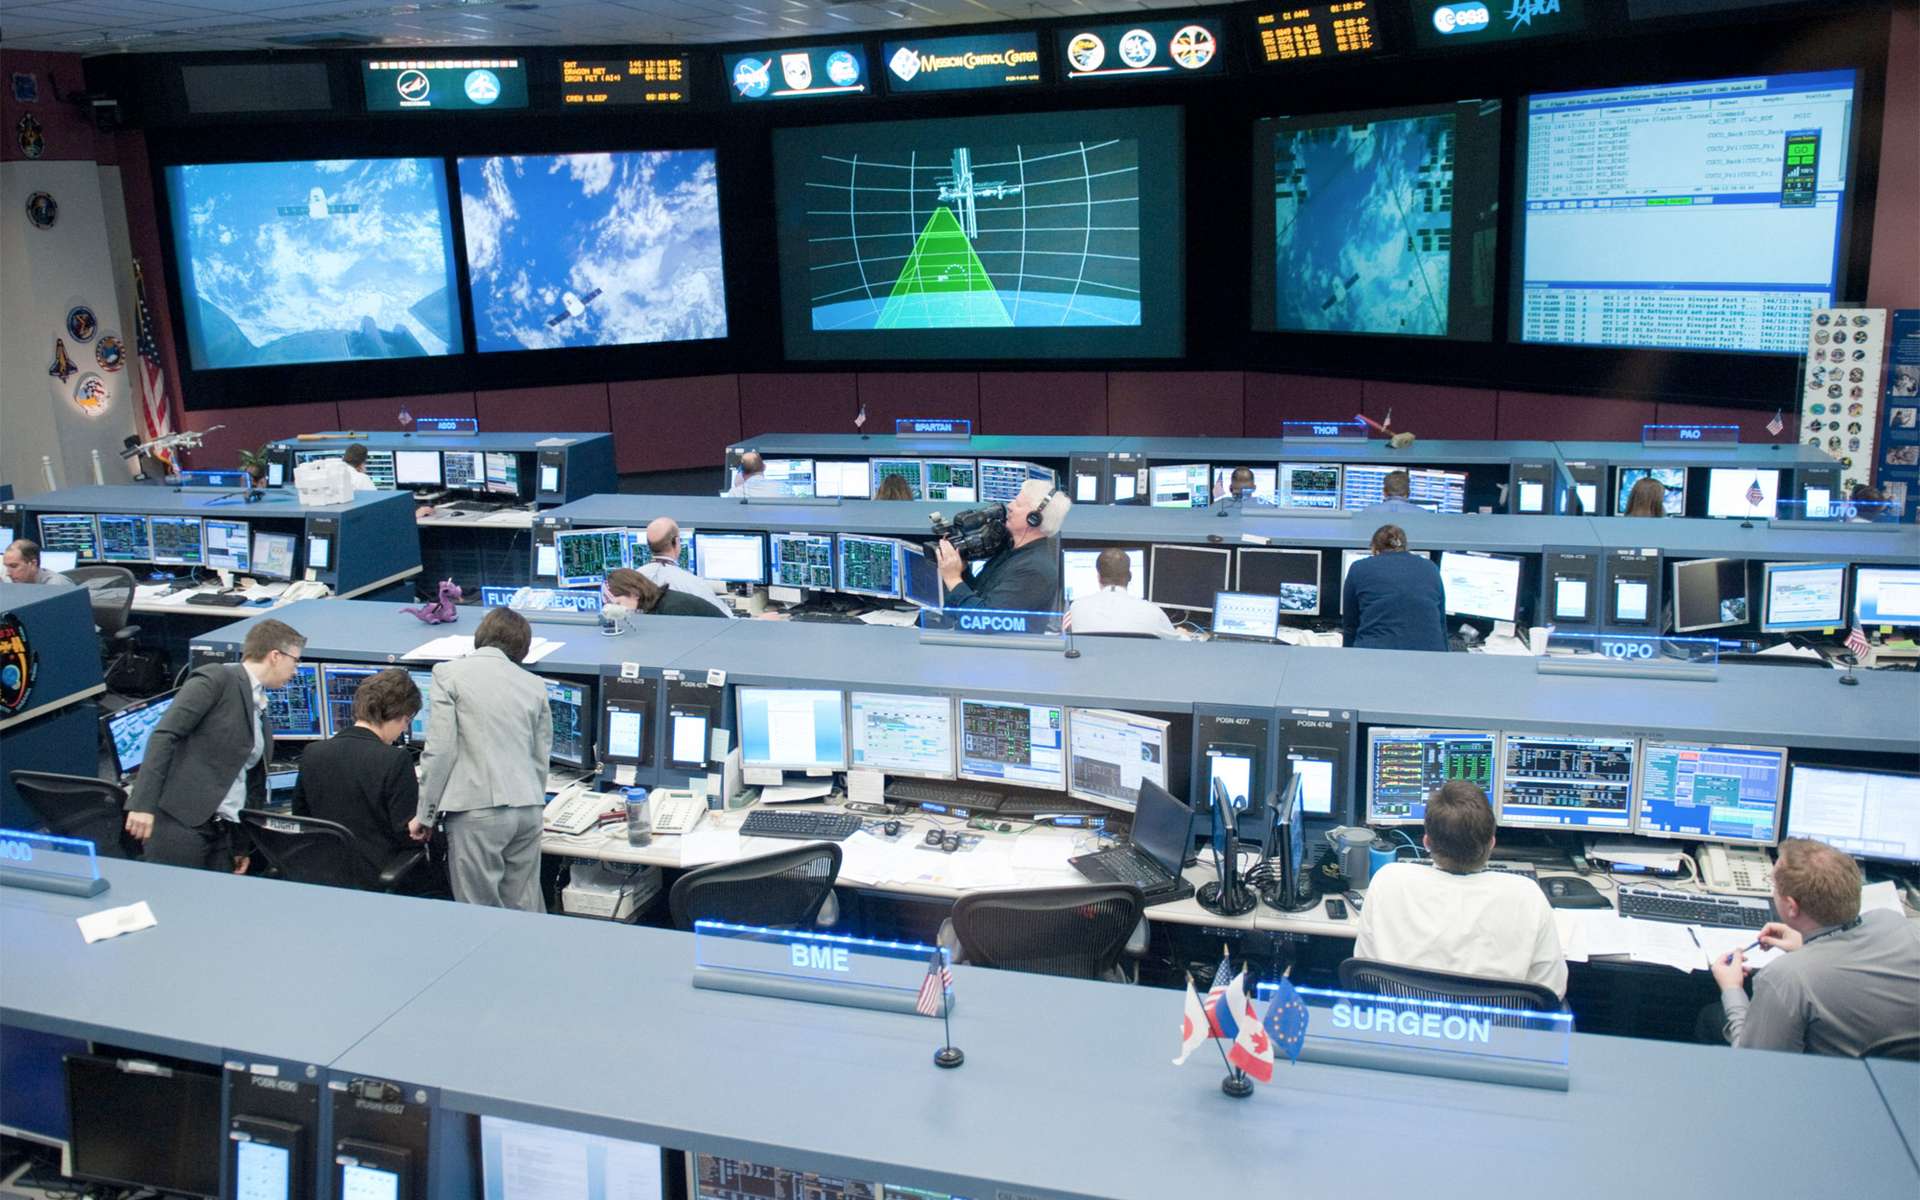 Le centre de contrôle de la Station spatiale internationale du Johnson Space Center à Houston a surveillé la phase de démonstration de la capsule Dragon, sa capture par le bras robotique de l'ISS et son amarrage au module Harmony. © Nasa